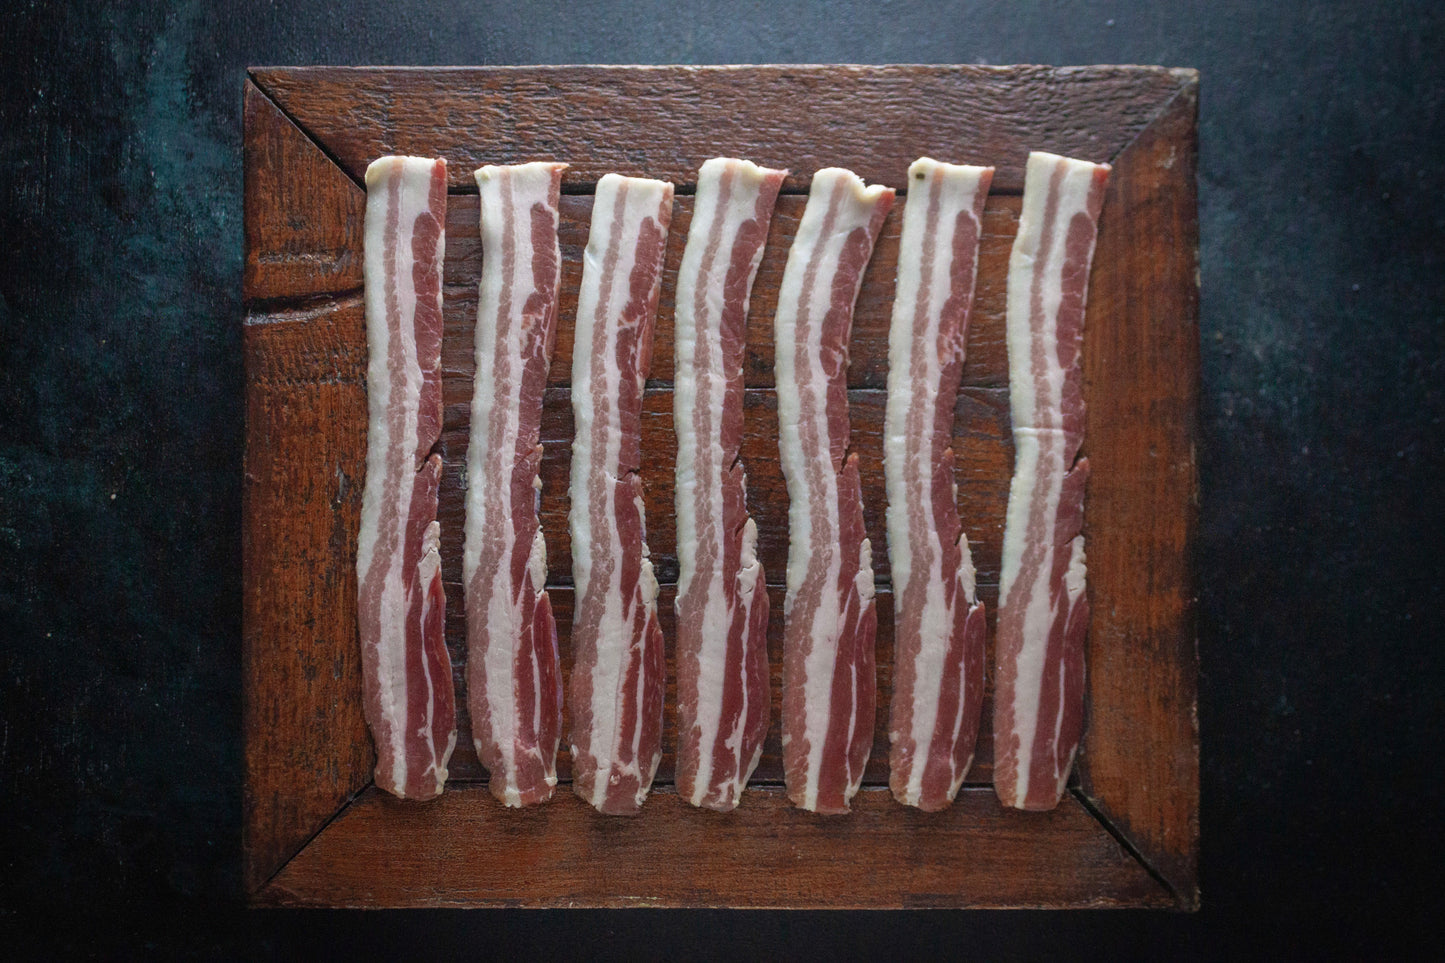 Aged Streaky Bacon Packs